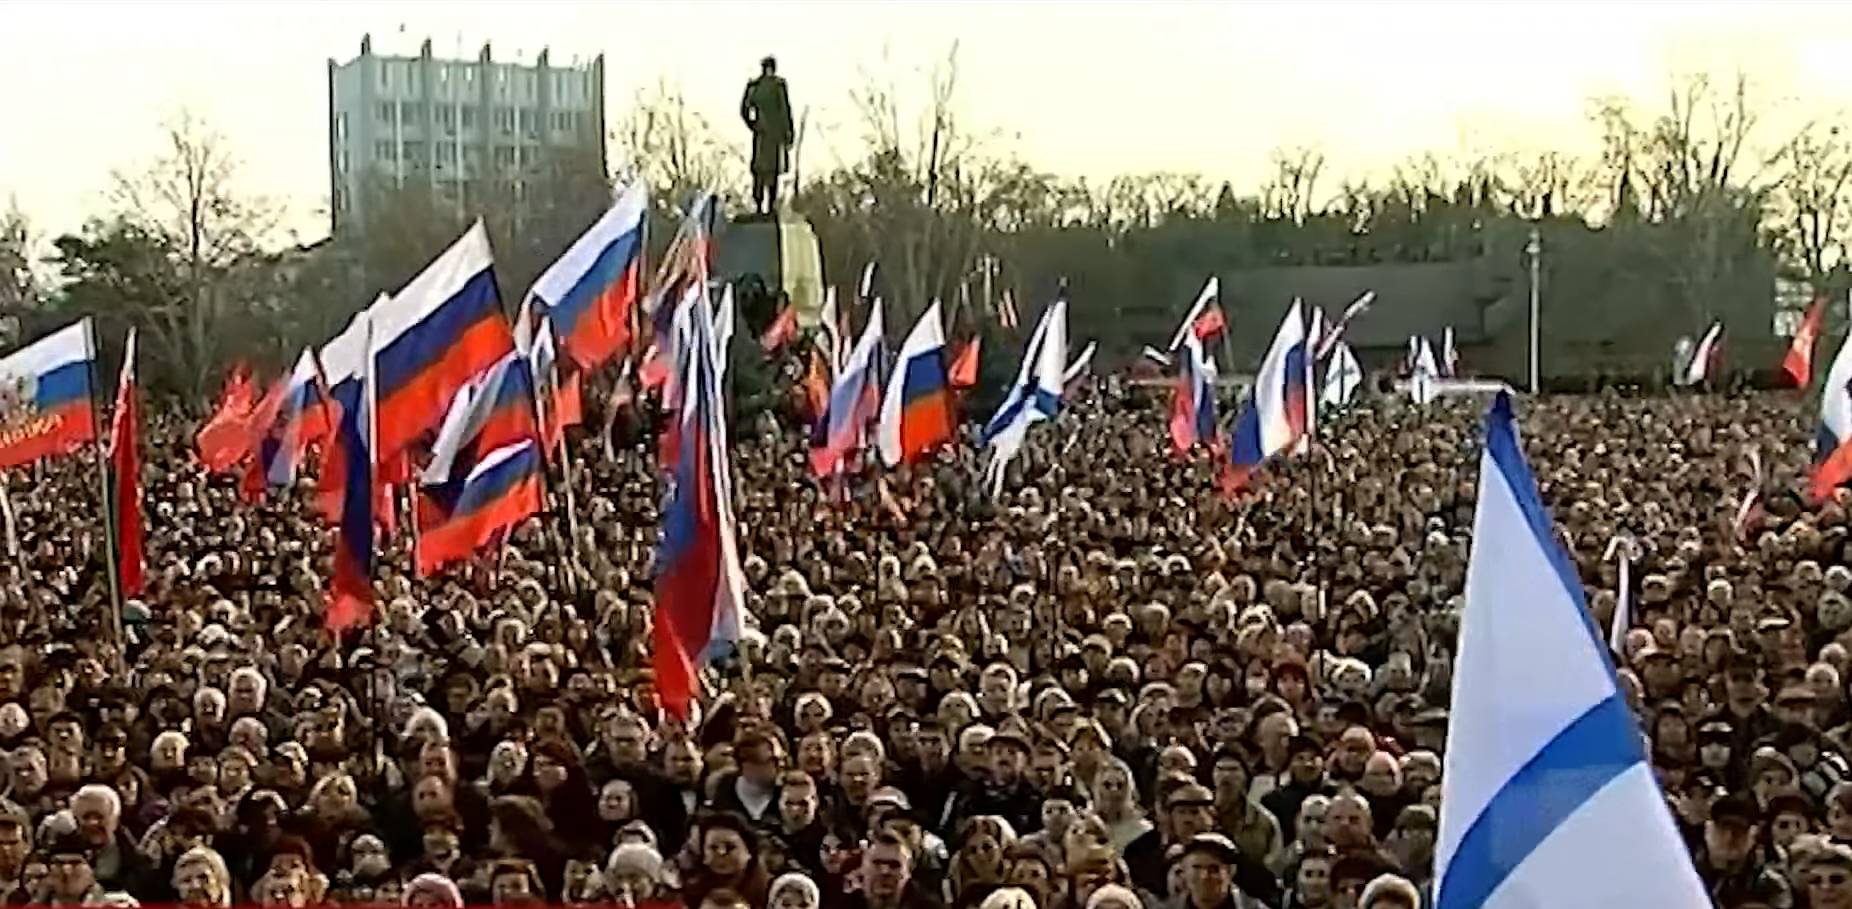 Митинг Народной воли после госпереворота в Киеве. Севастополь. 23 февраля 2014 года